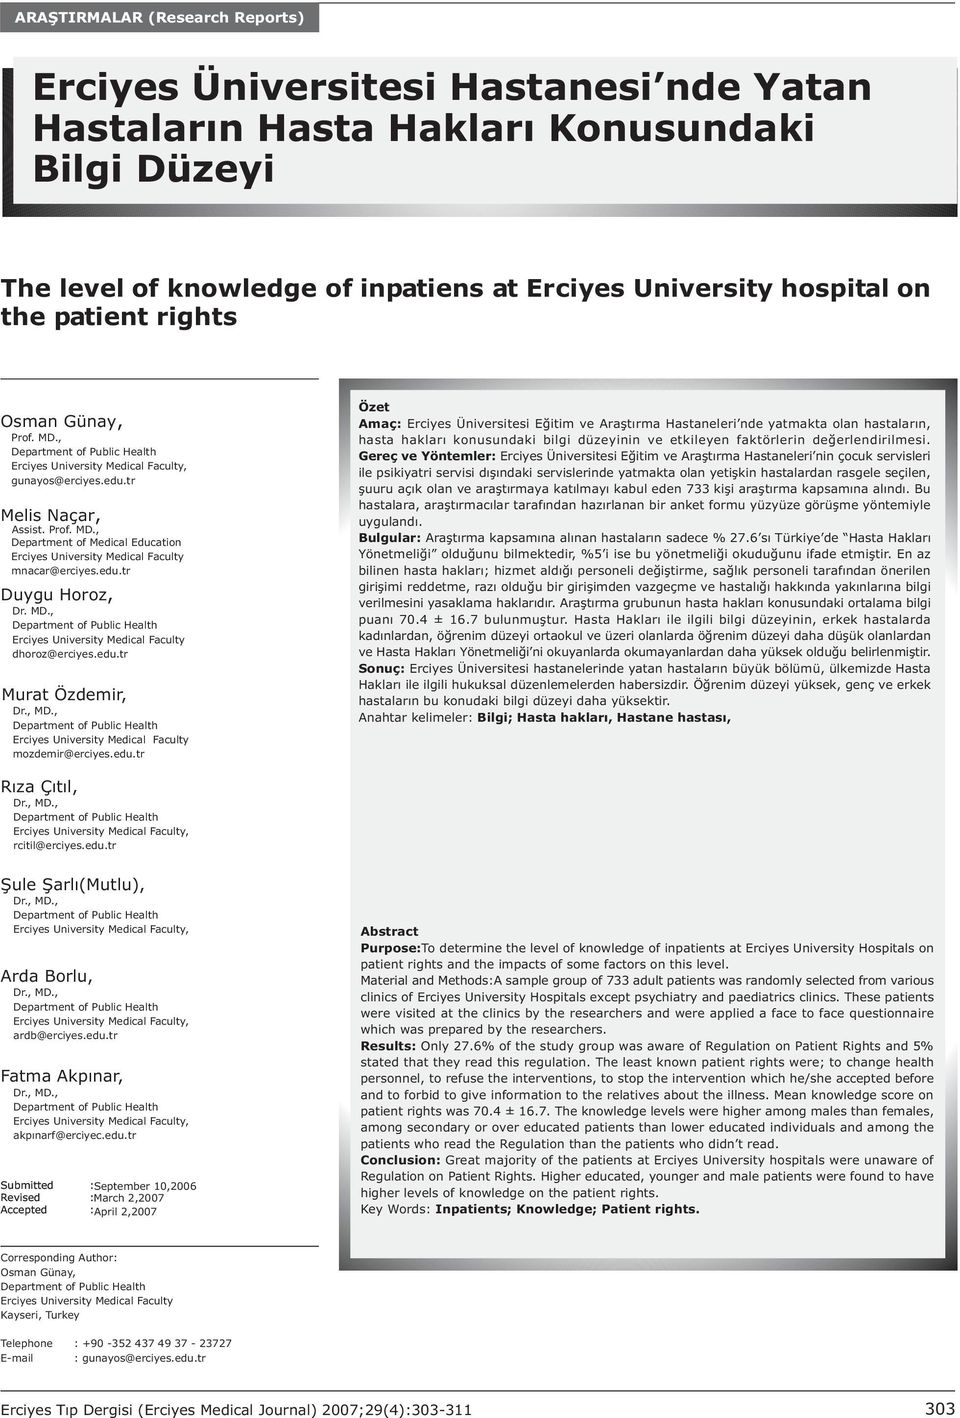 MD., Erciyes University Medical Faculty dhoroz@erciyes.edu.